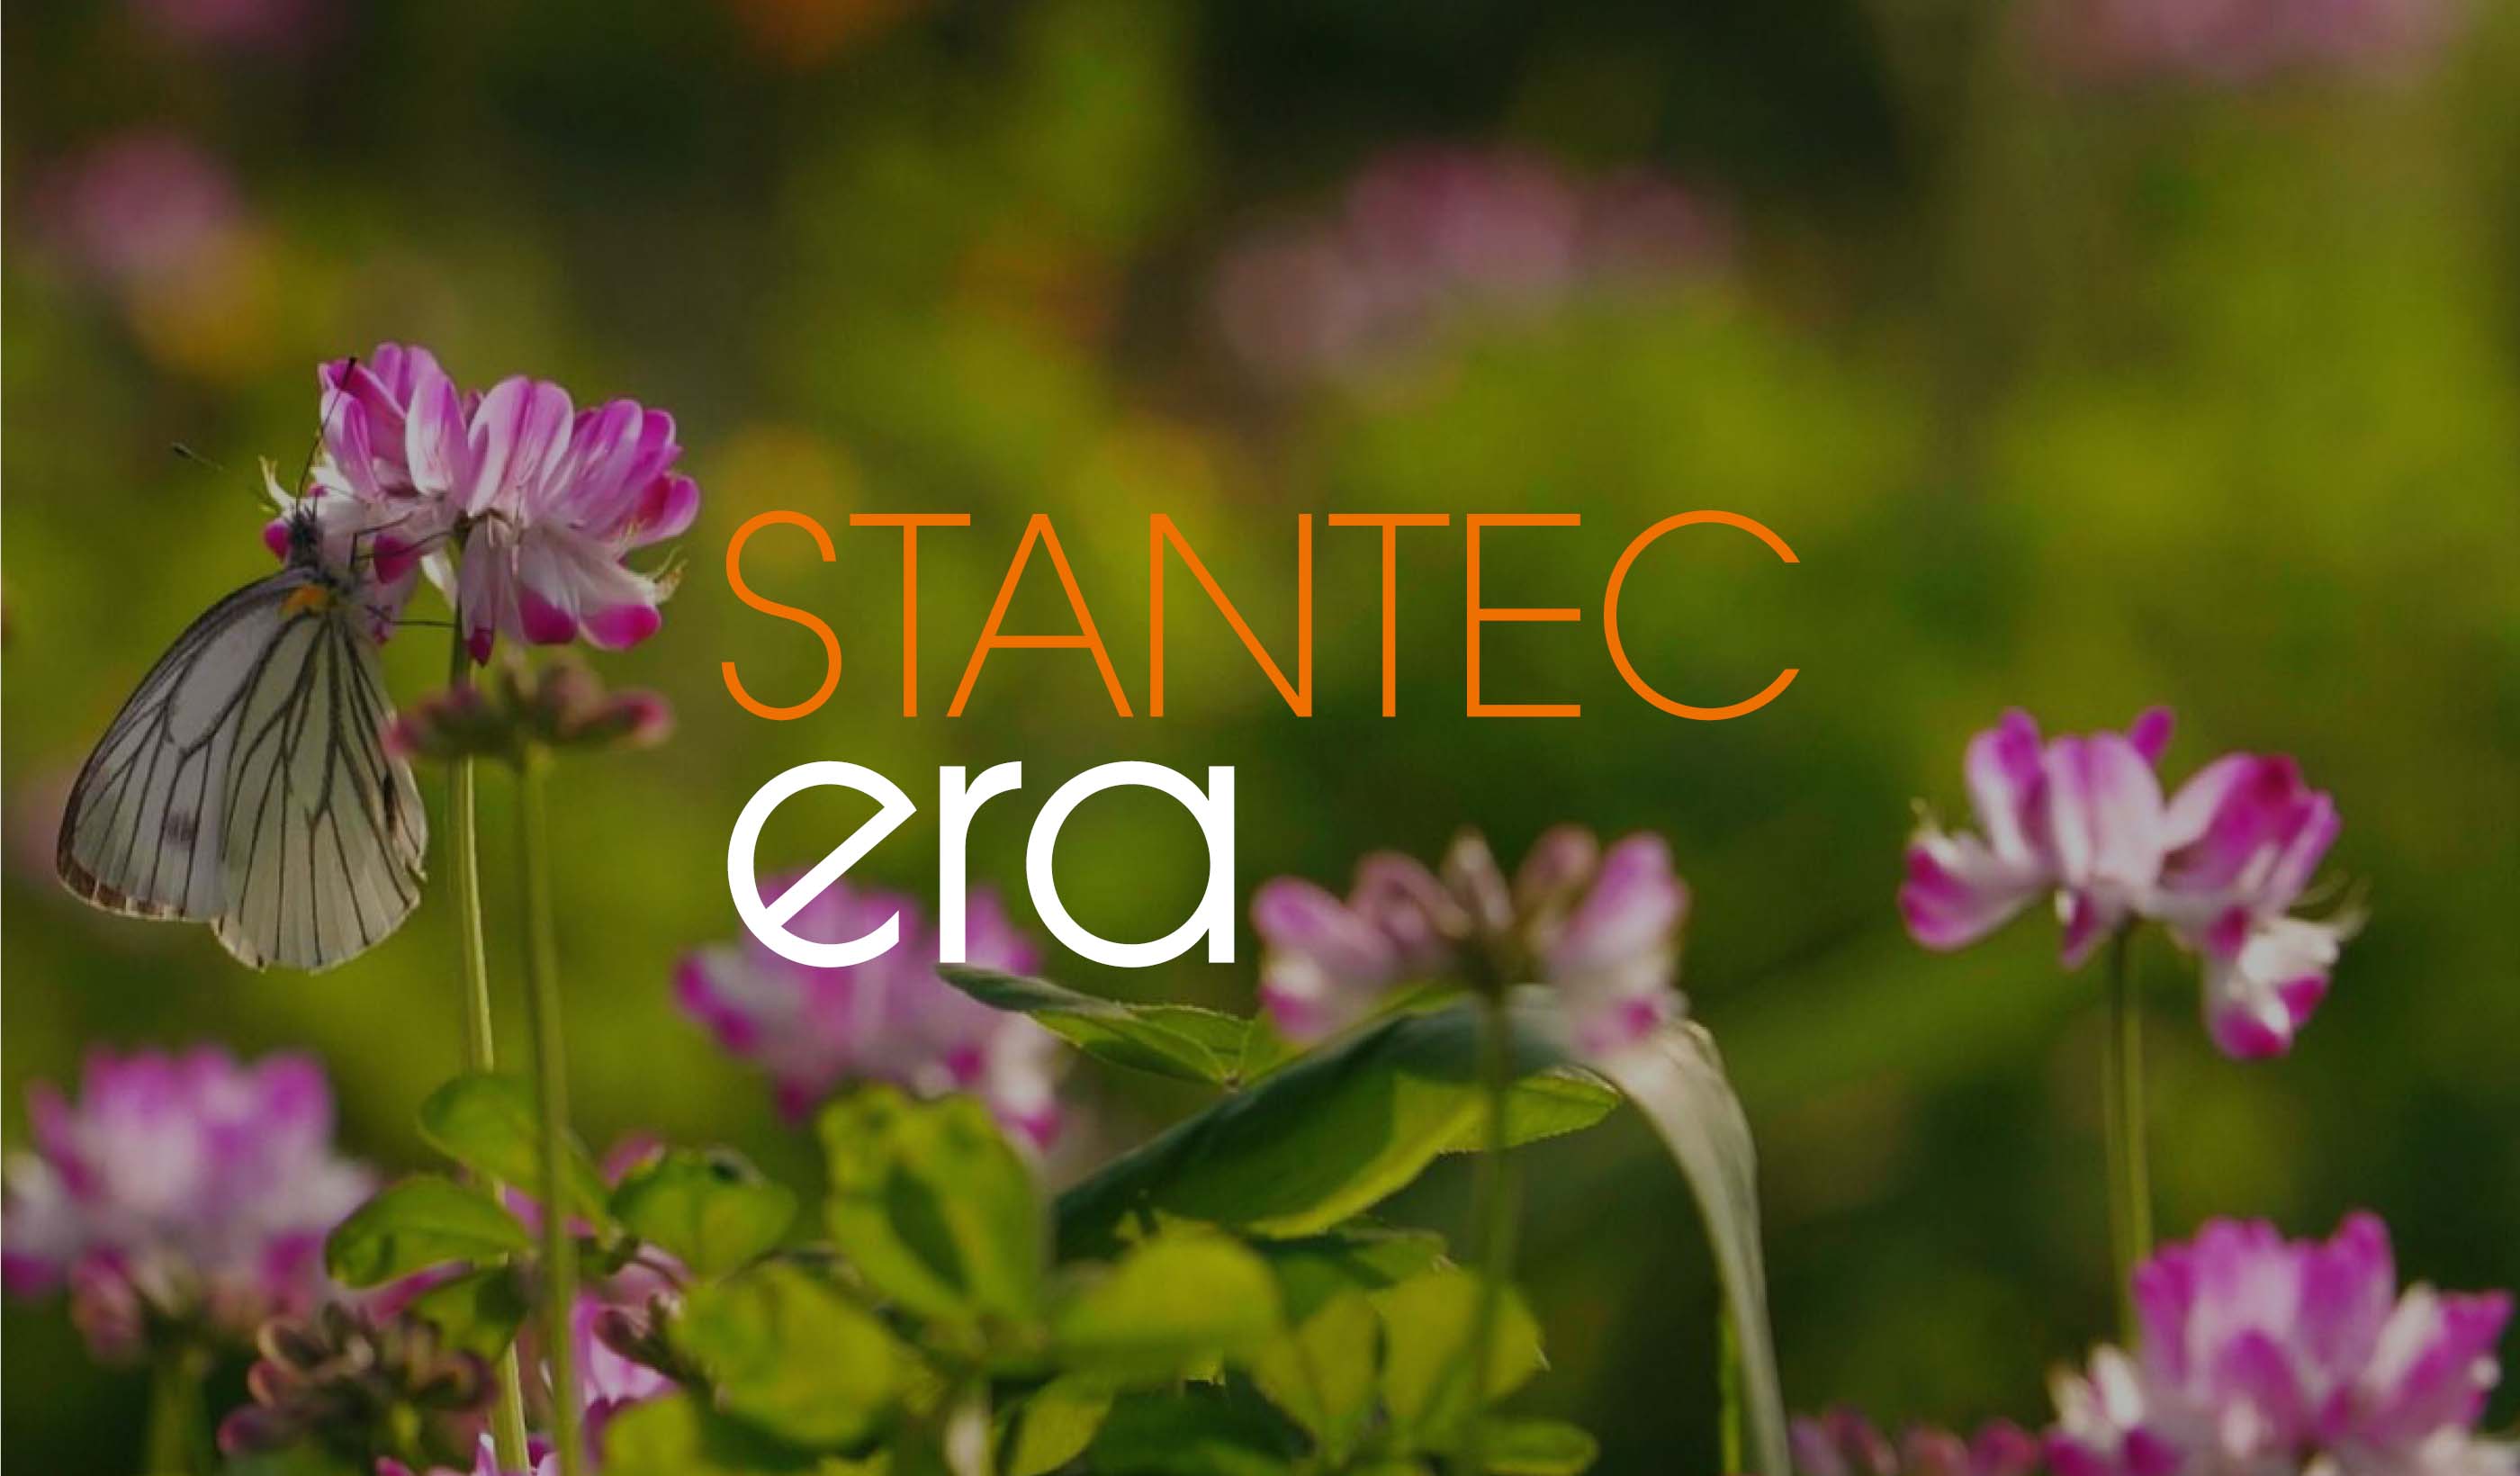 Stantec ERA Issue 11 | The Reimagine Issue